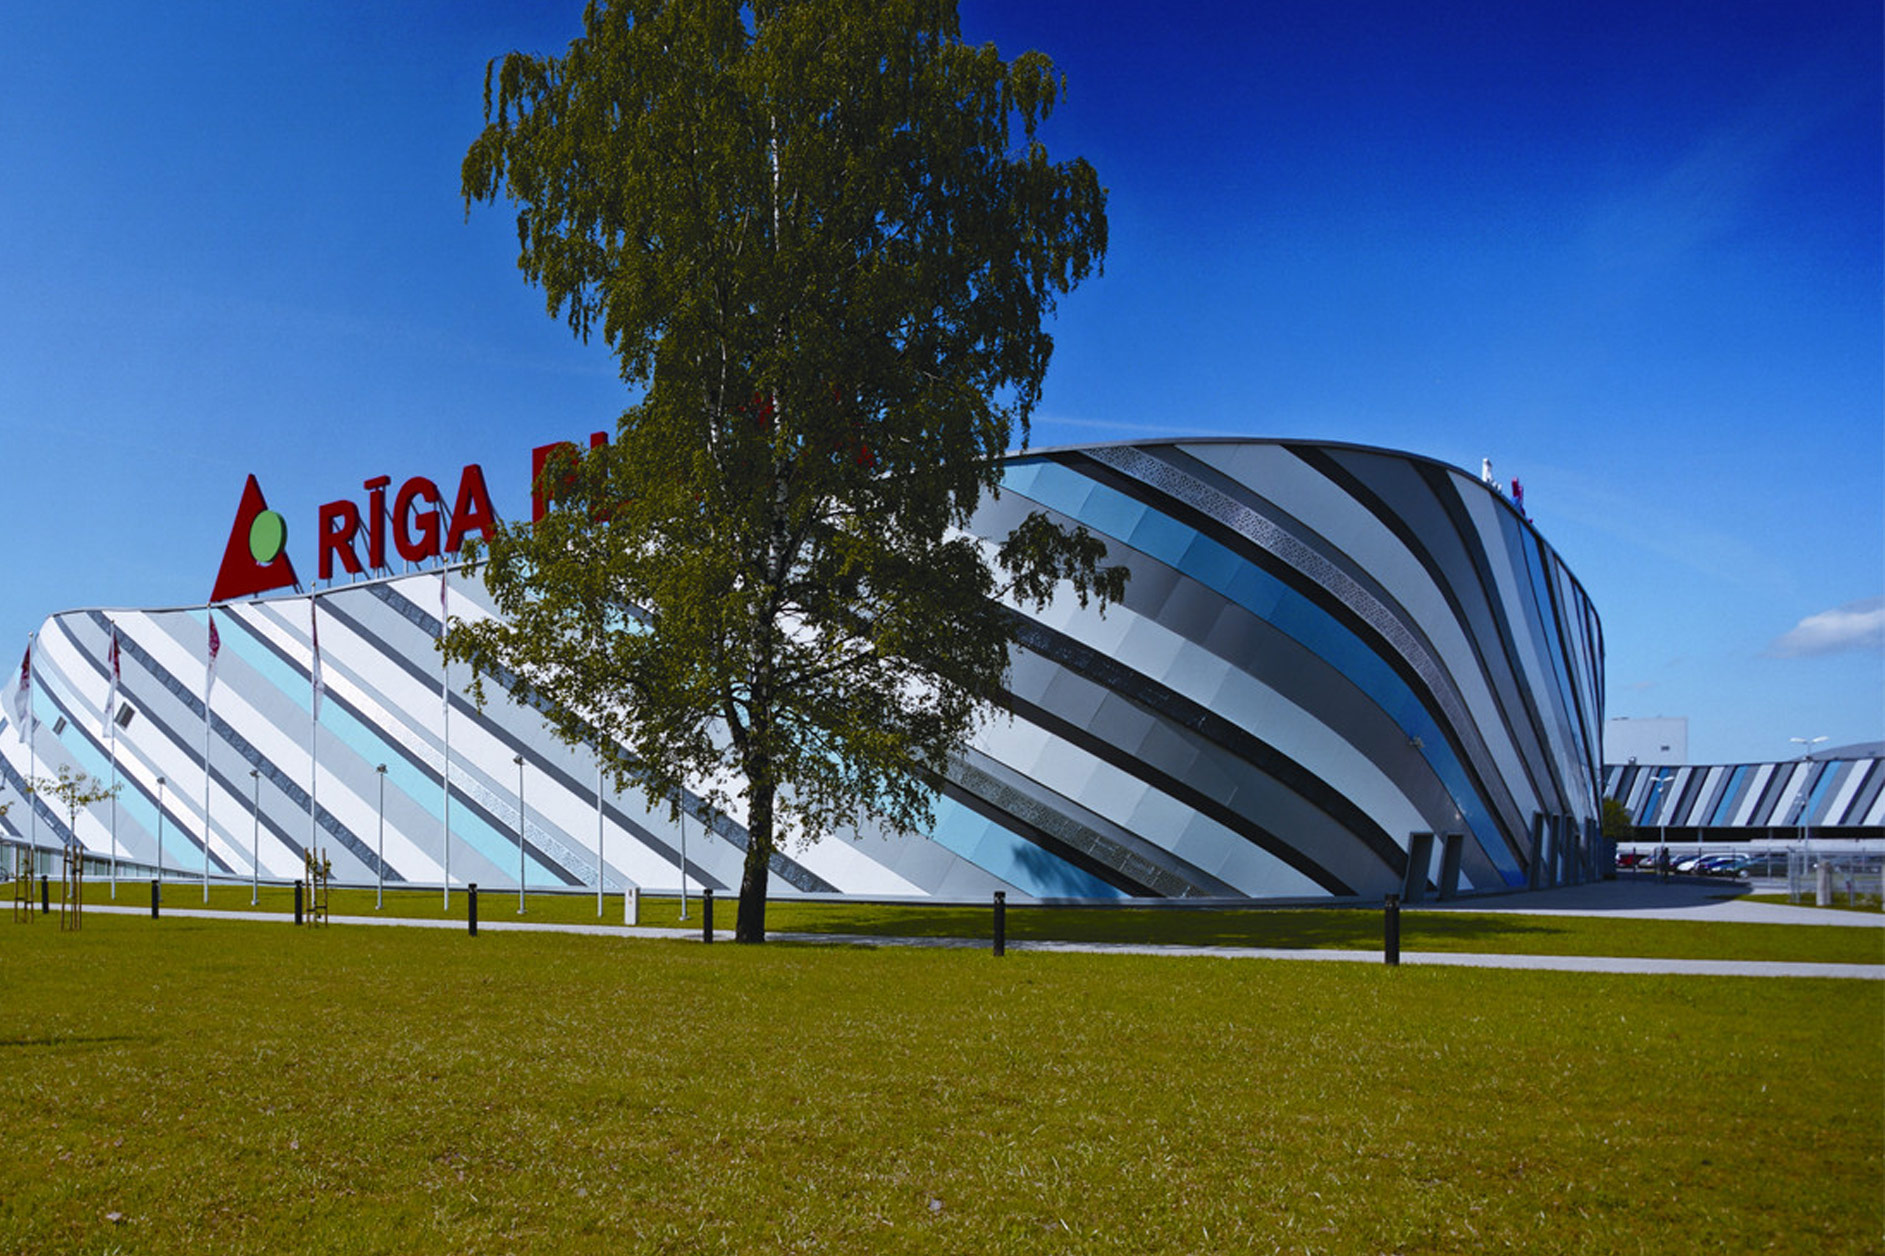 Riga Plaza